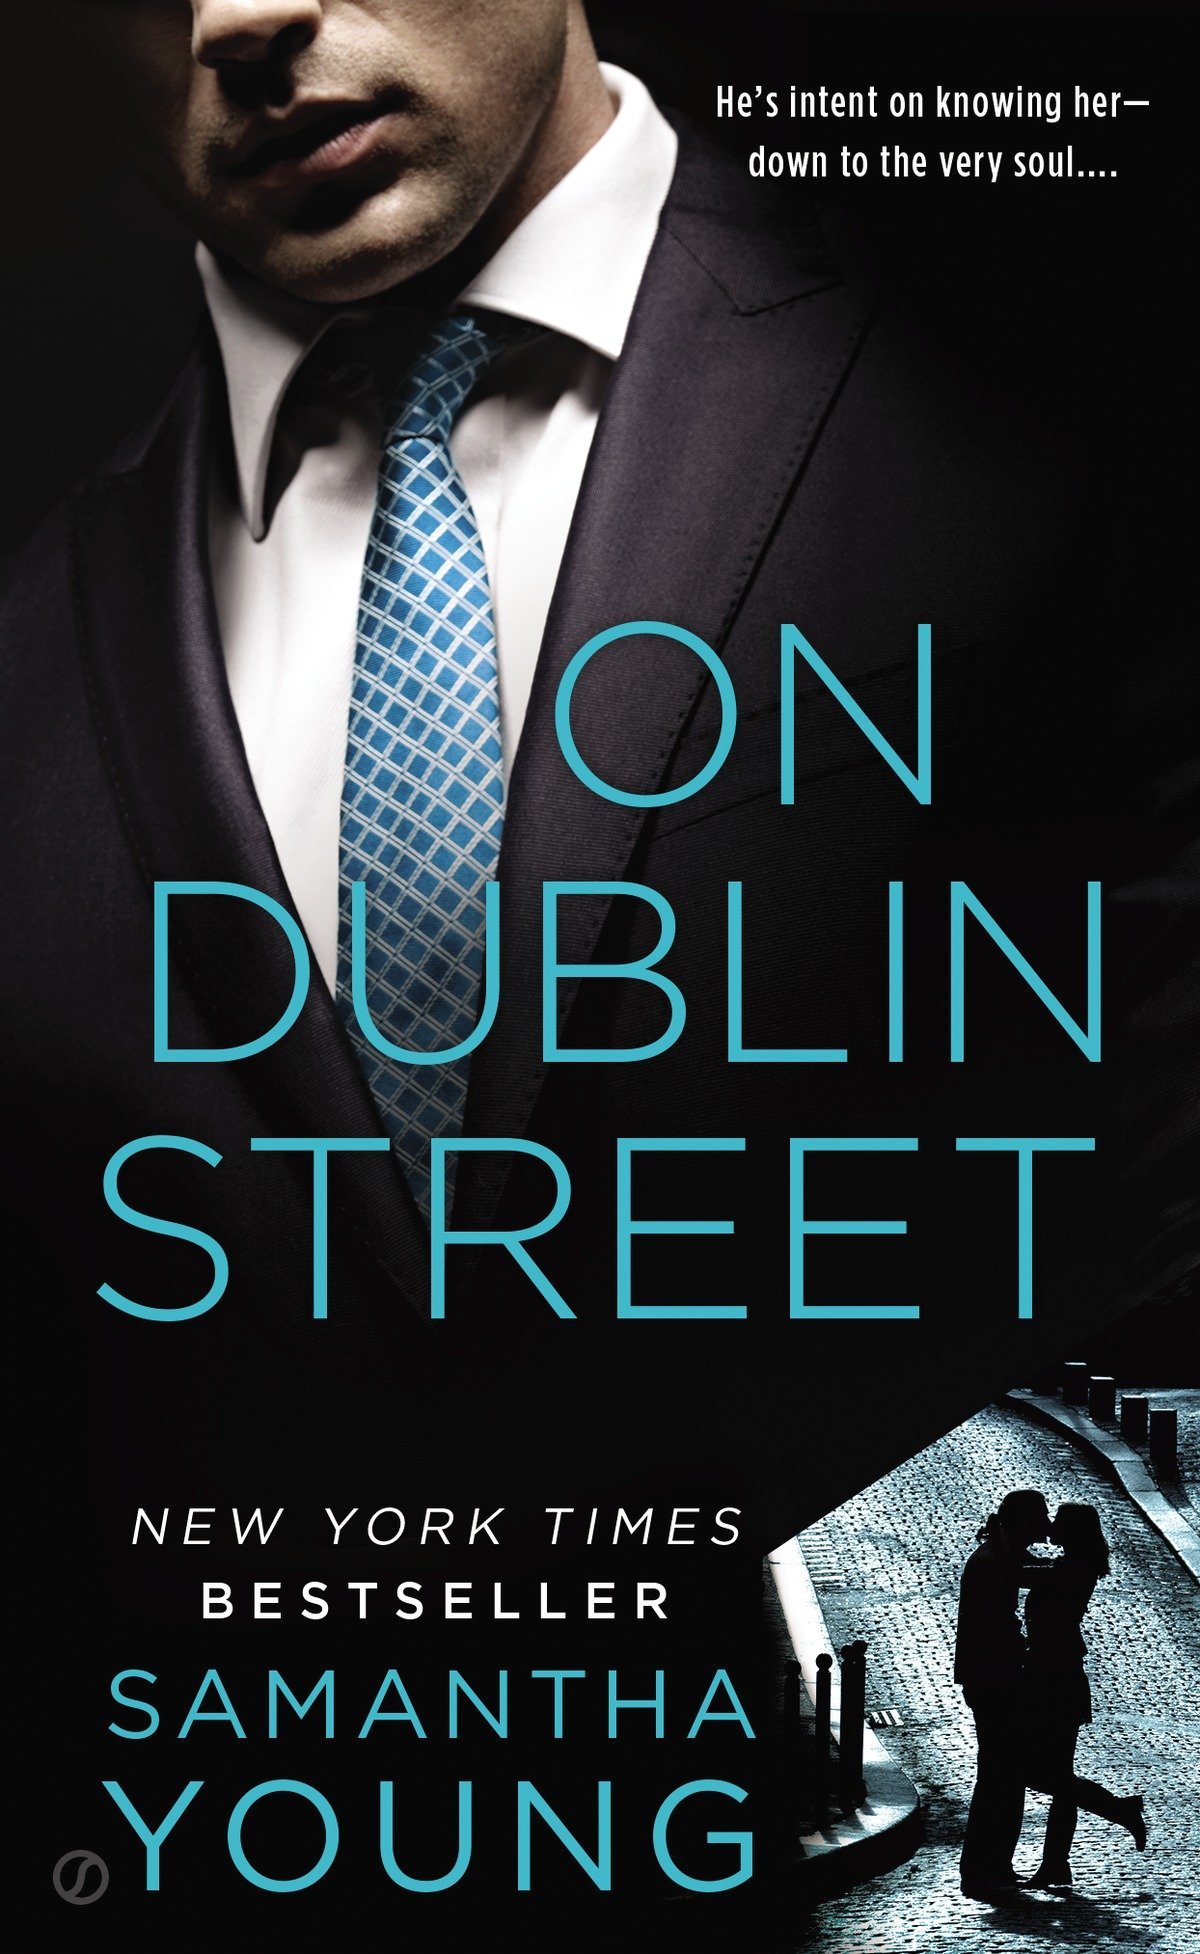 On Dublin Street (On Dublin Street Series, Band 1)